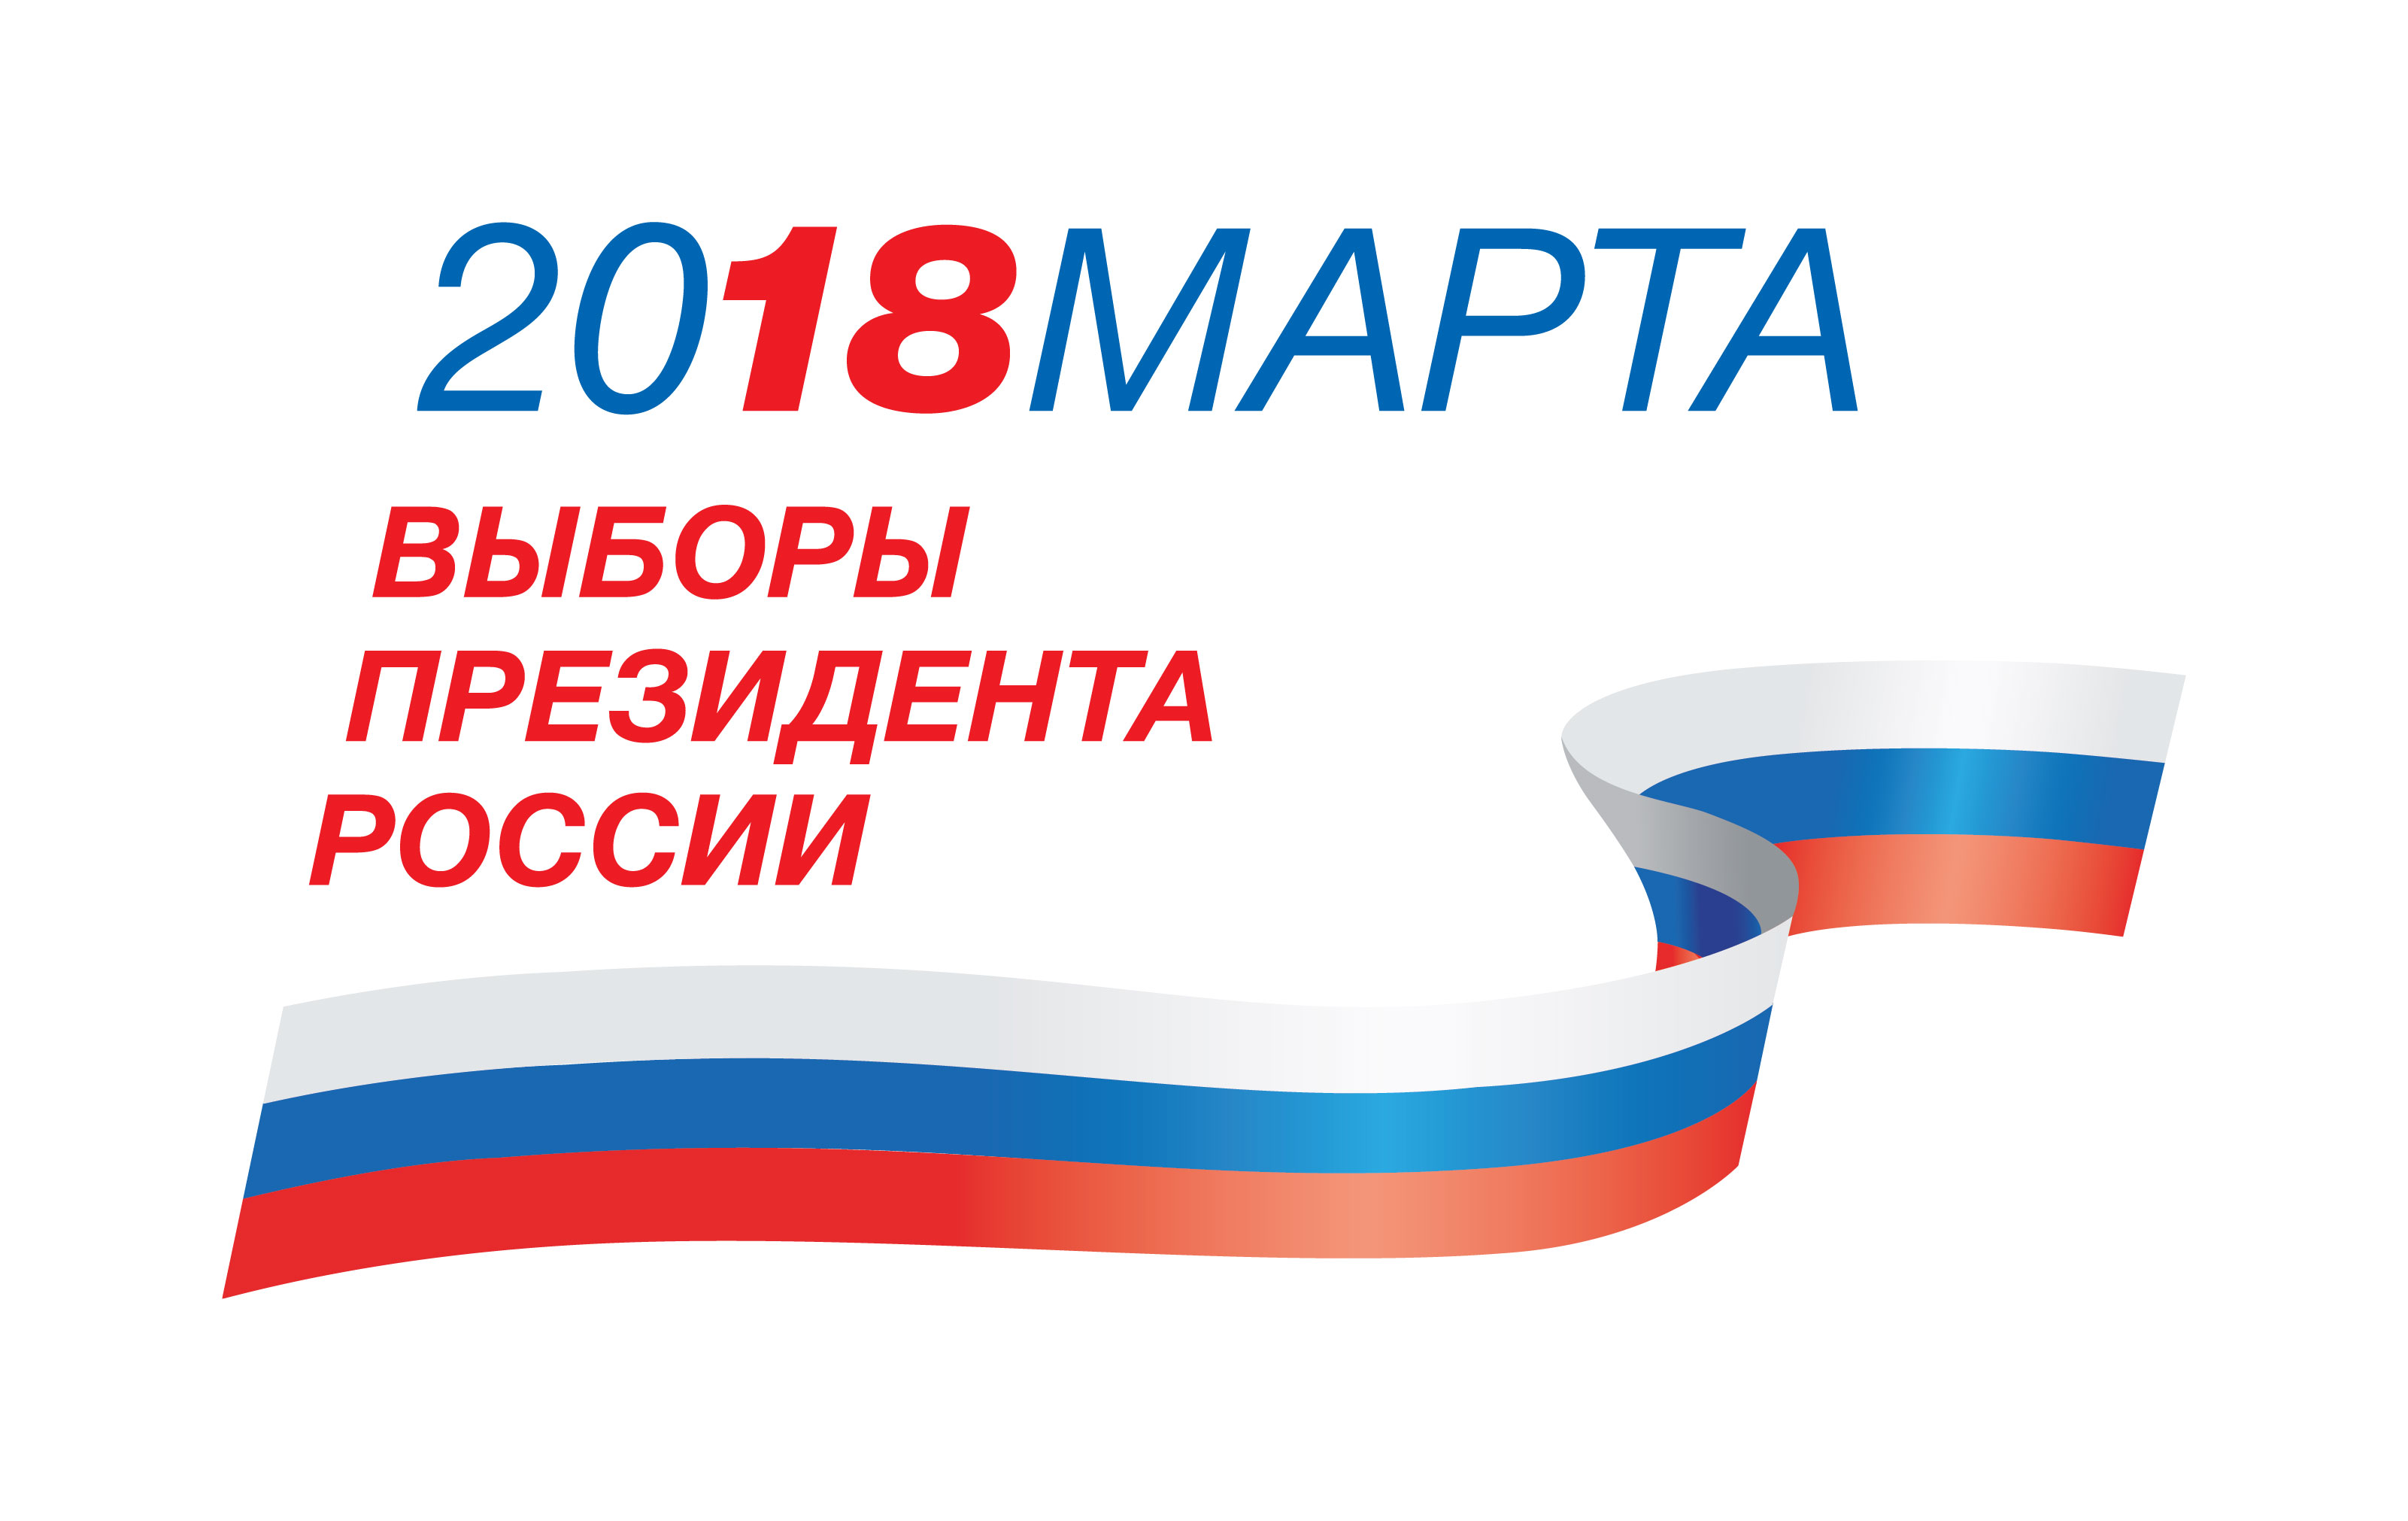 Мы получили официальную аккредитацию на Выборы Президента РФ 2018 года